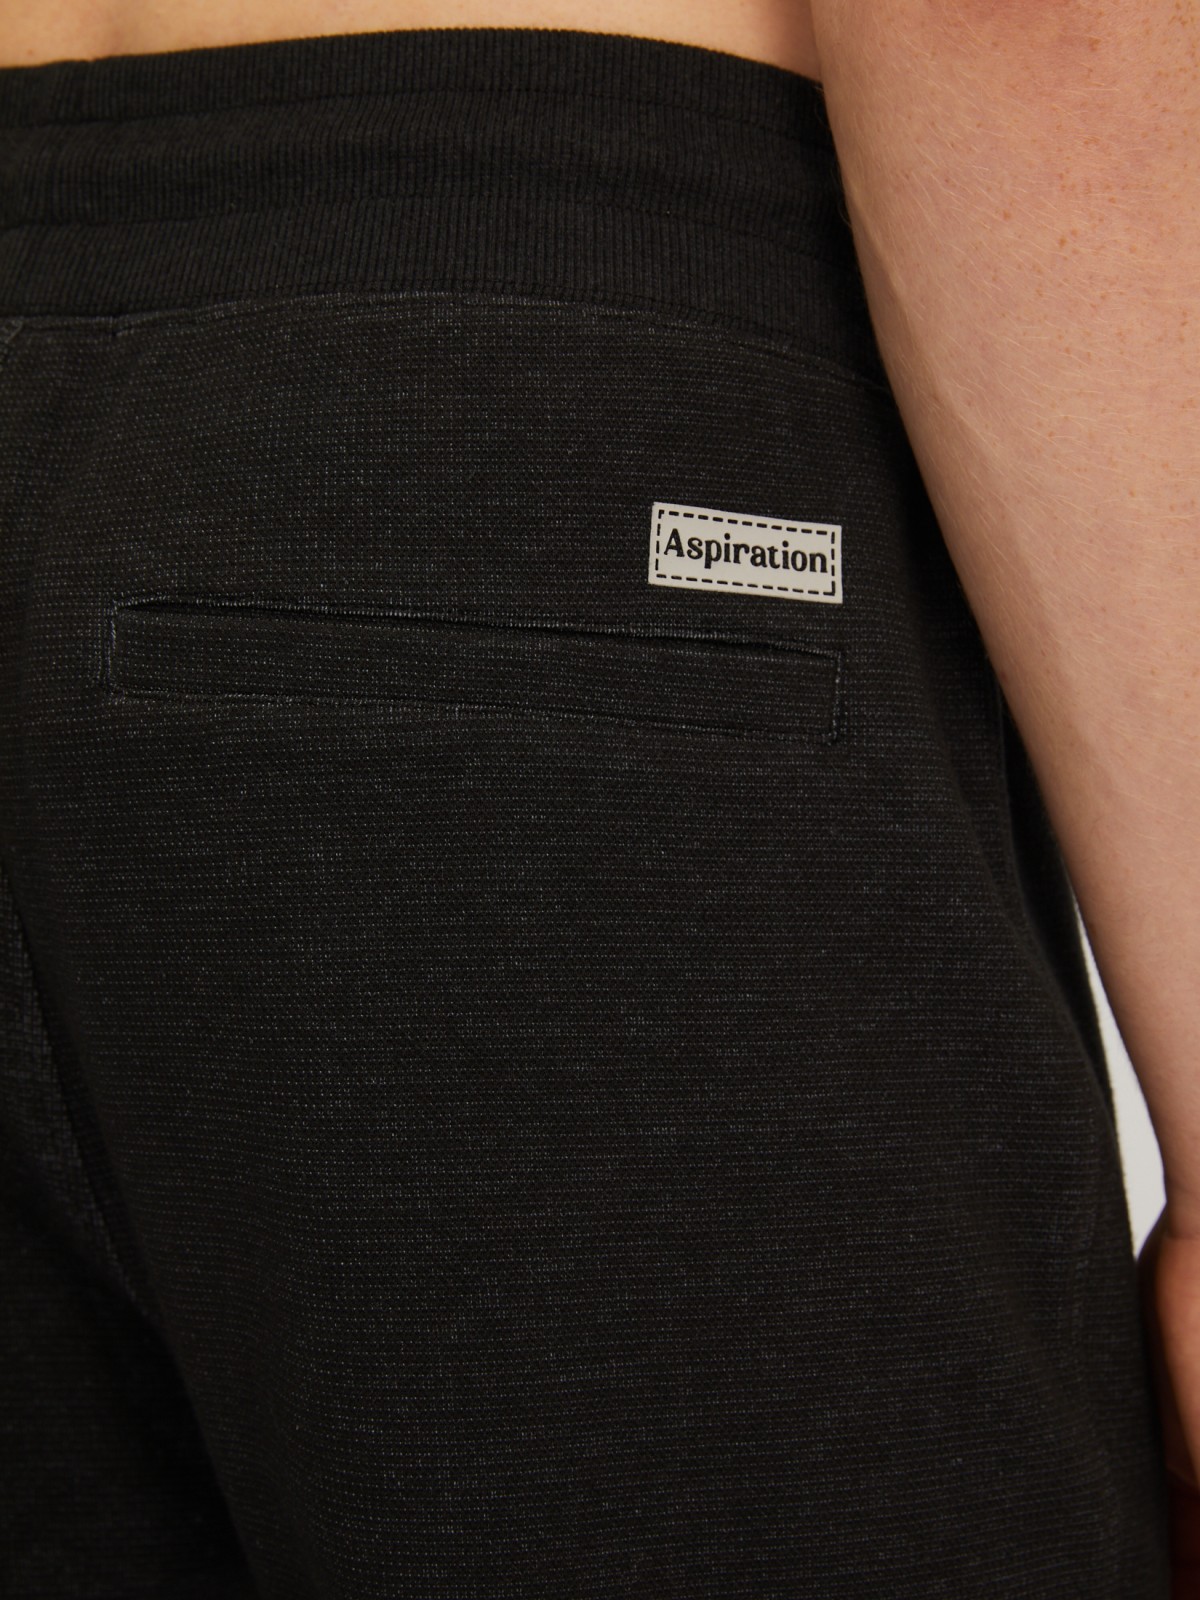 Трикотажные брюки-джоггеры в спортивном стиле zolla 014127679013, цвет черный, размер S - фото 6